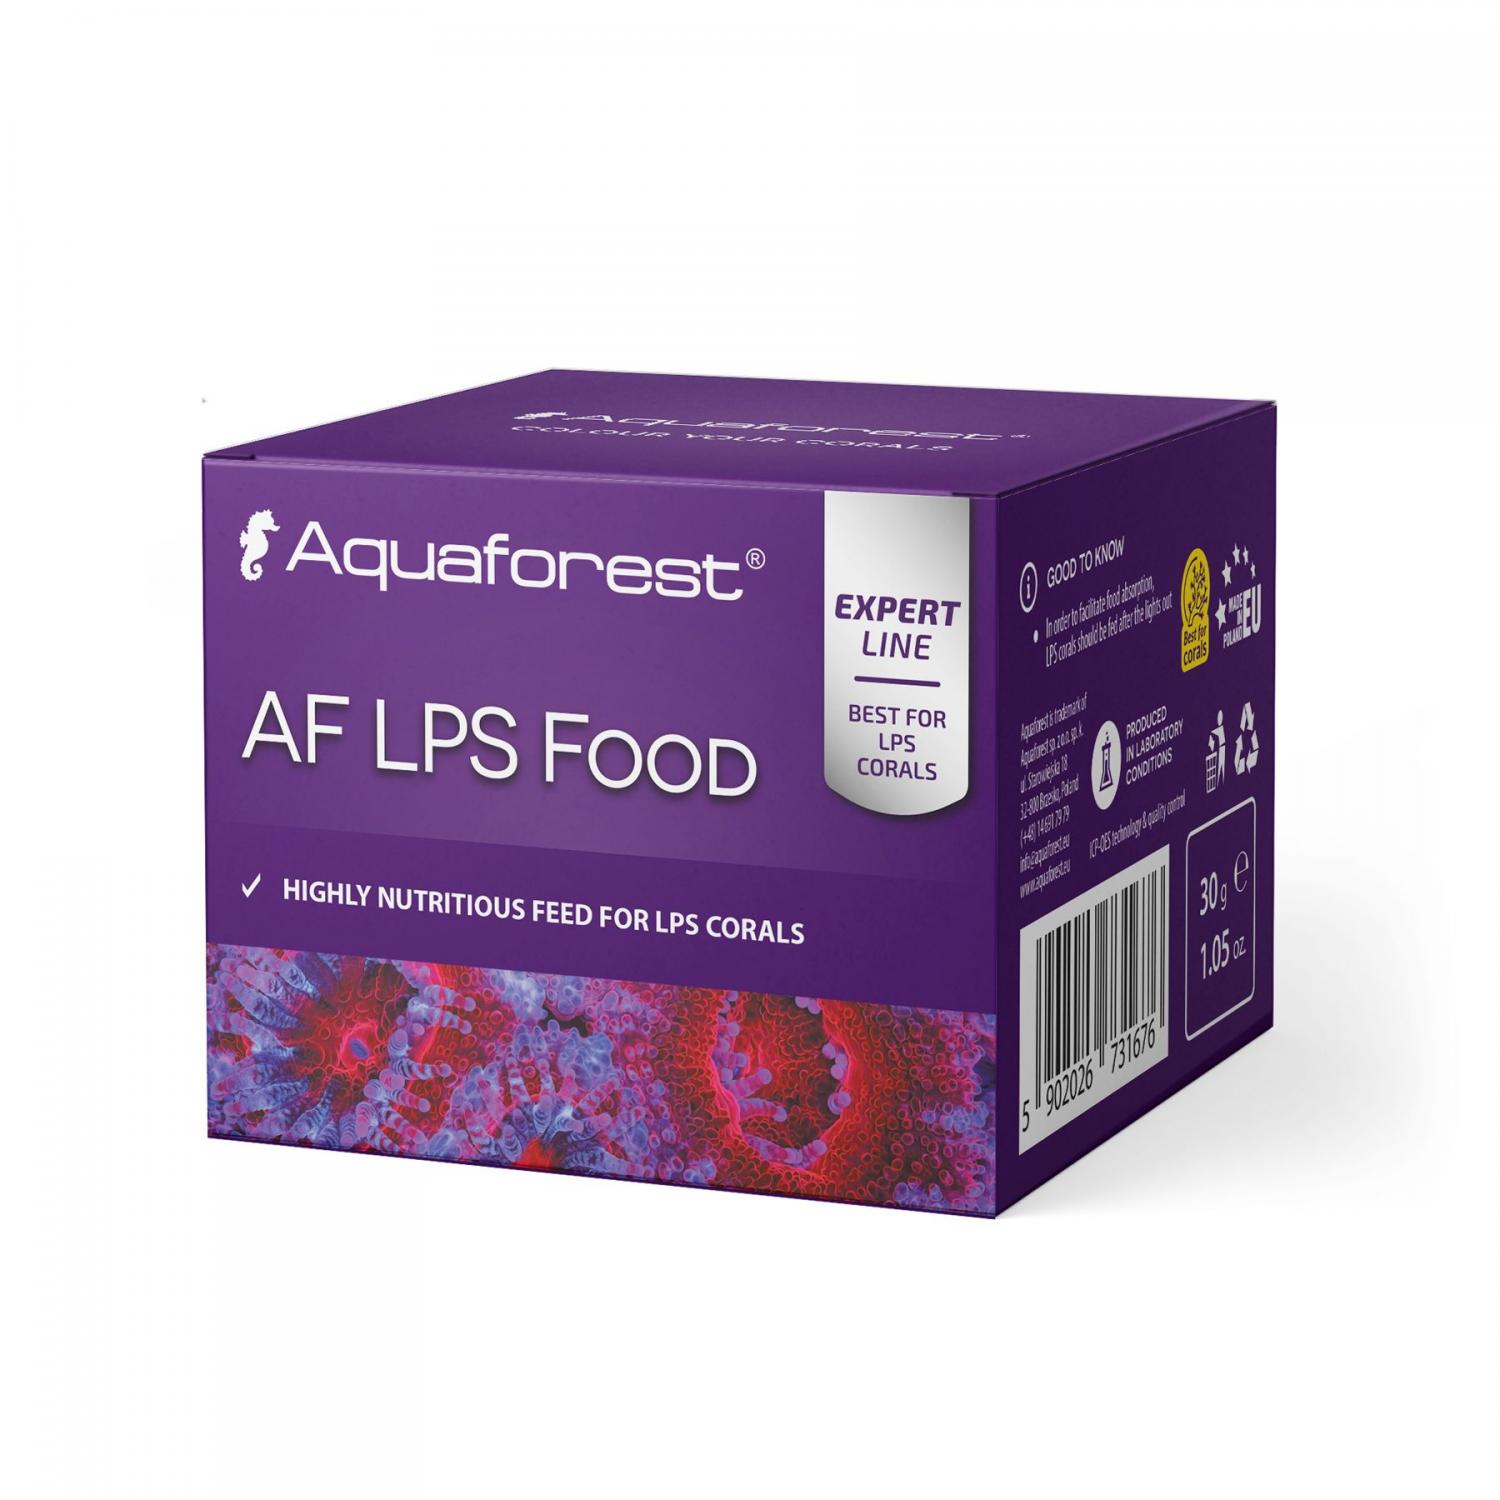 AF LPS food